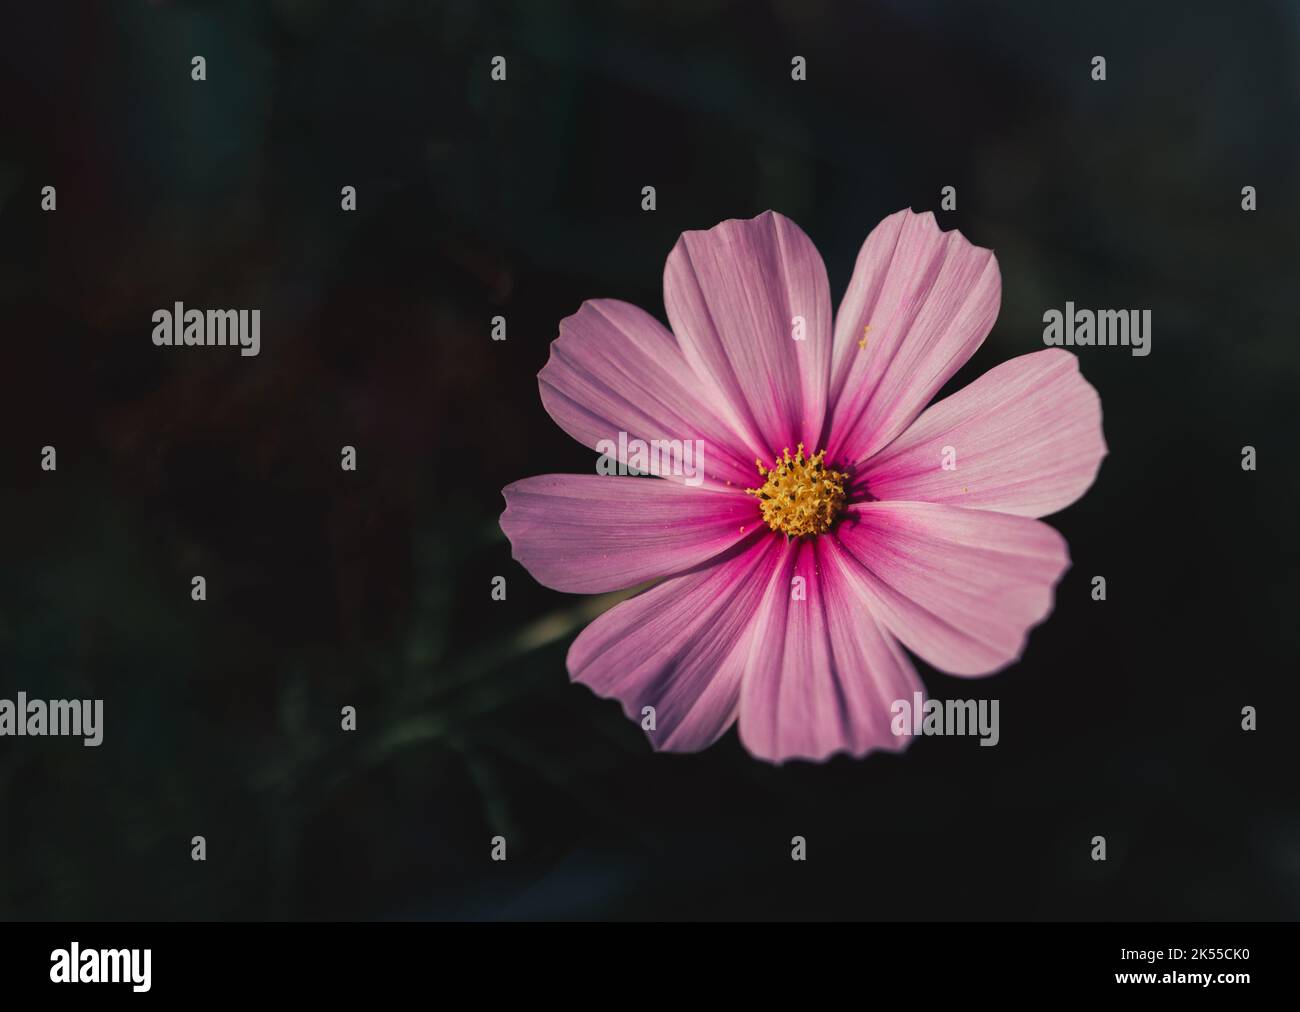 Nahaufnahme von Sonata Pink Blush oder Cosmos Bipinnatus in Blüte vor einem dunklen, unscharfen Hintergrund. Blumen-Makro-Fotografie in stimmungsvollen Tönen und Kopierraum Stockfoto